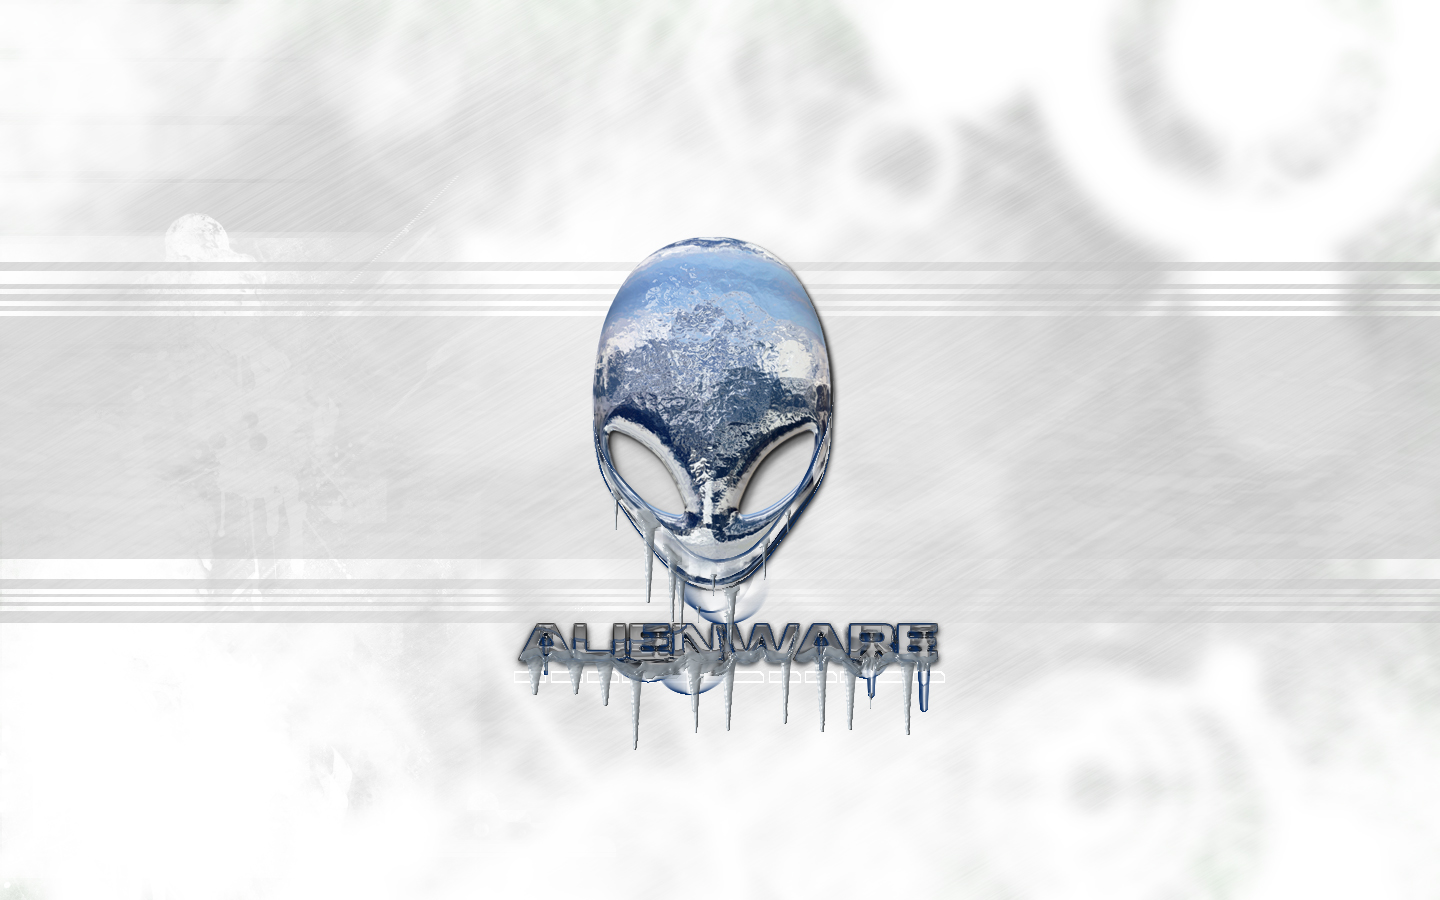 Alienware Wallpaper - 1440x900 Wallpaper 